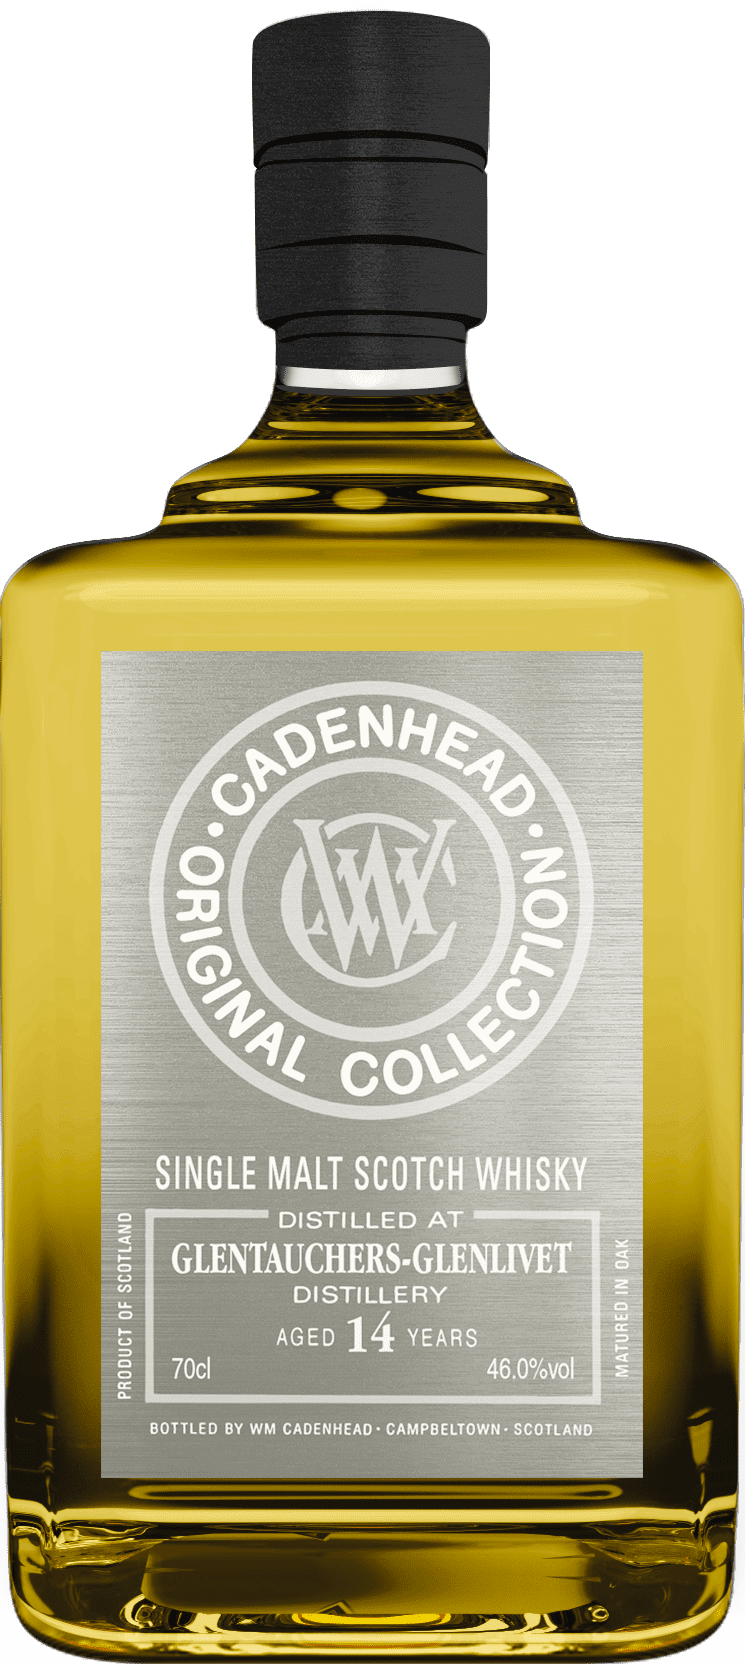 Cadenhead Glentauchers-Glenlivet 14 Year Old Scotch Whisky